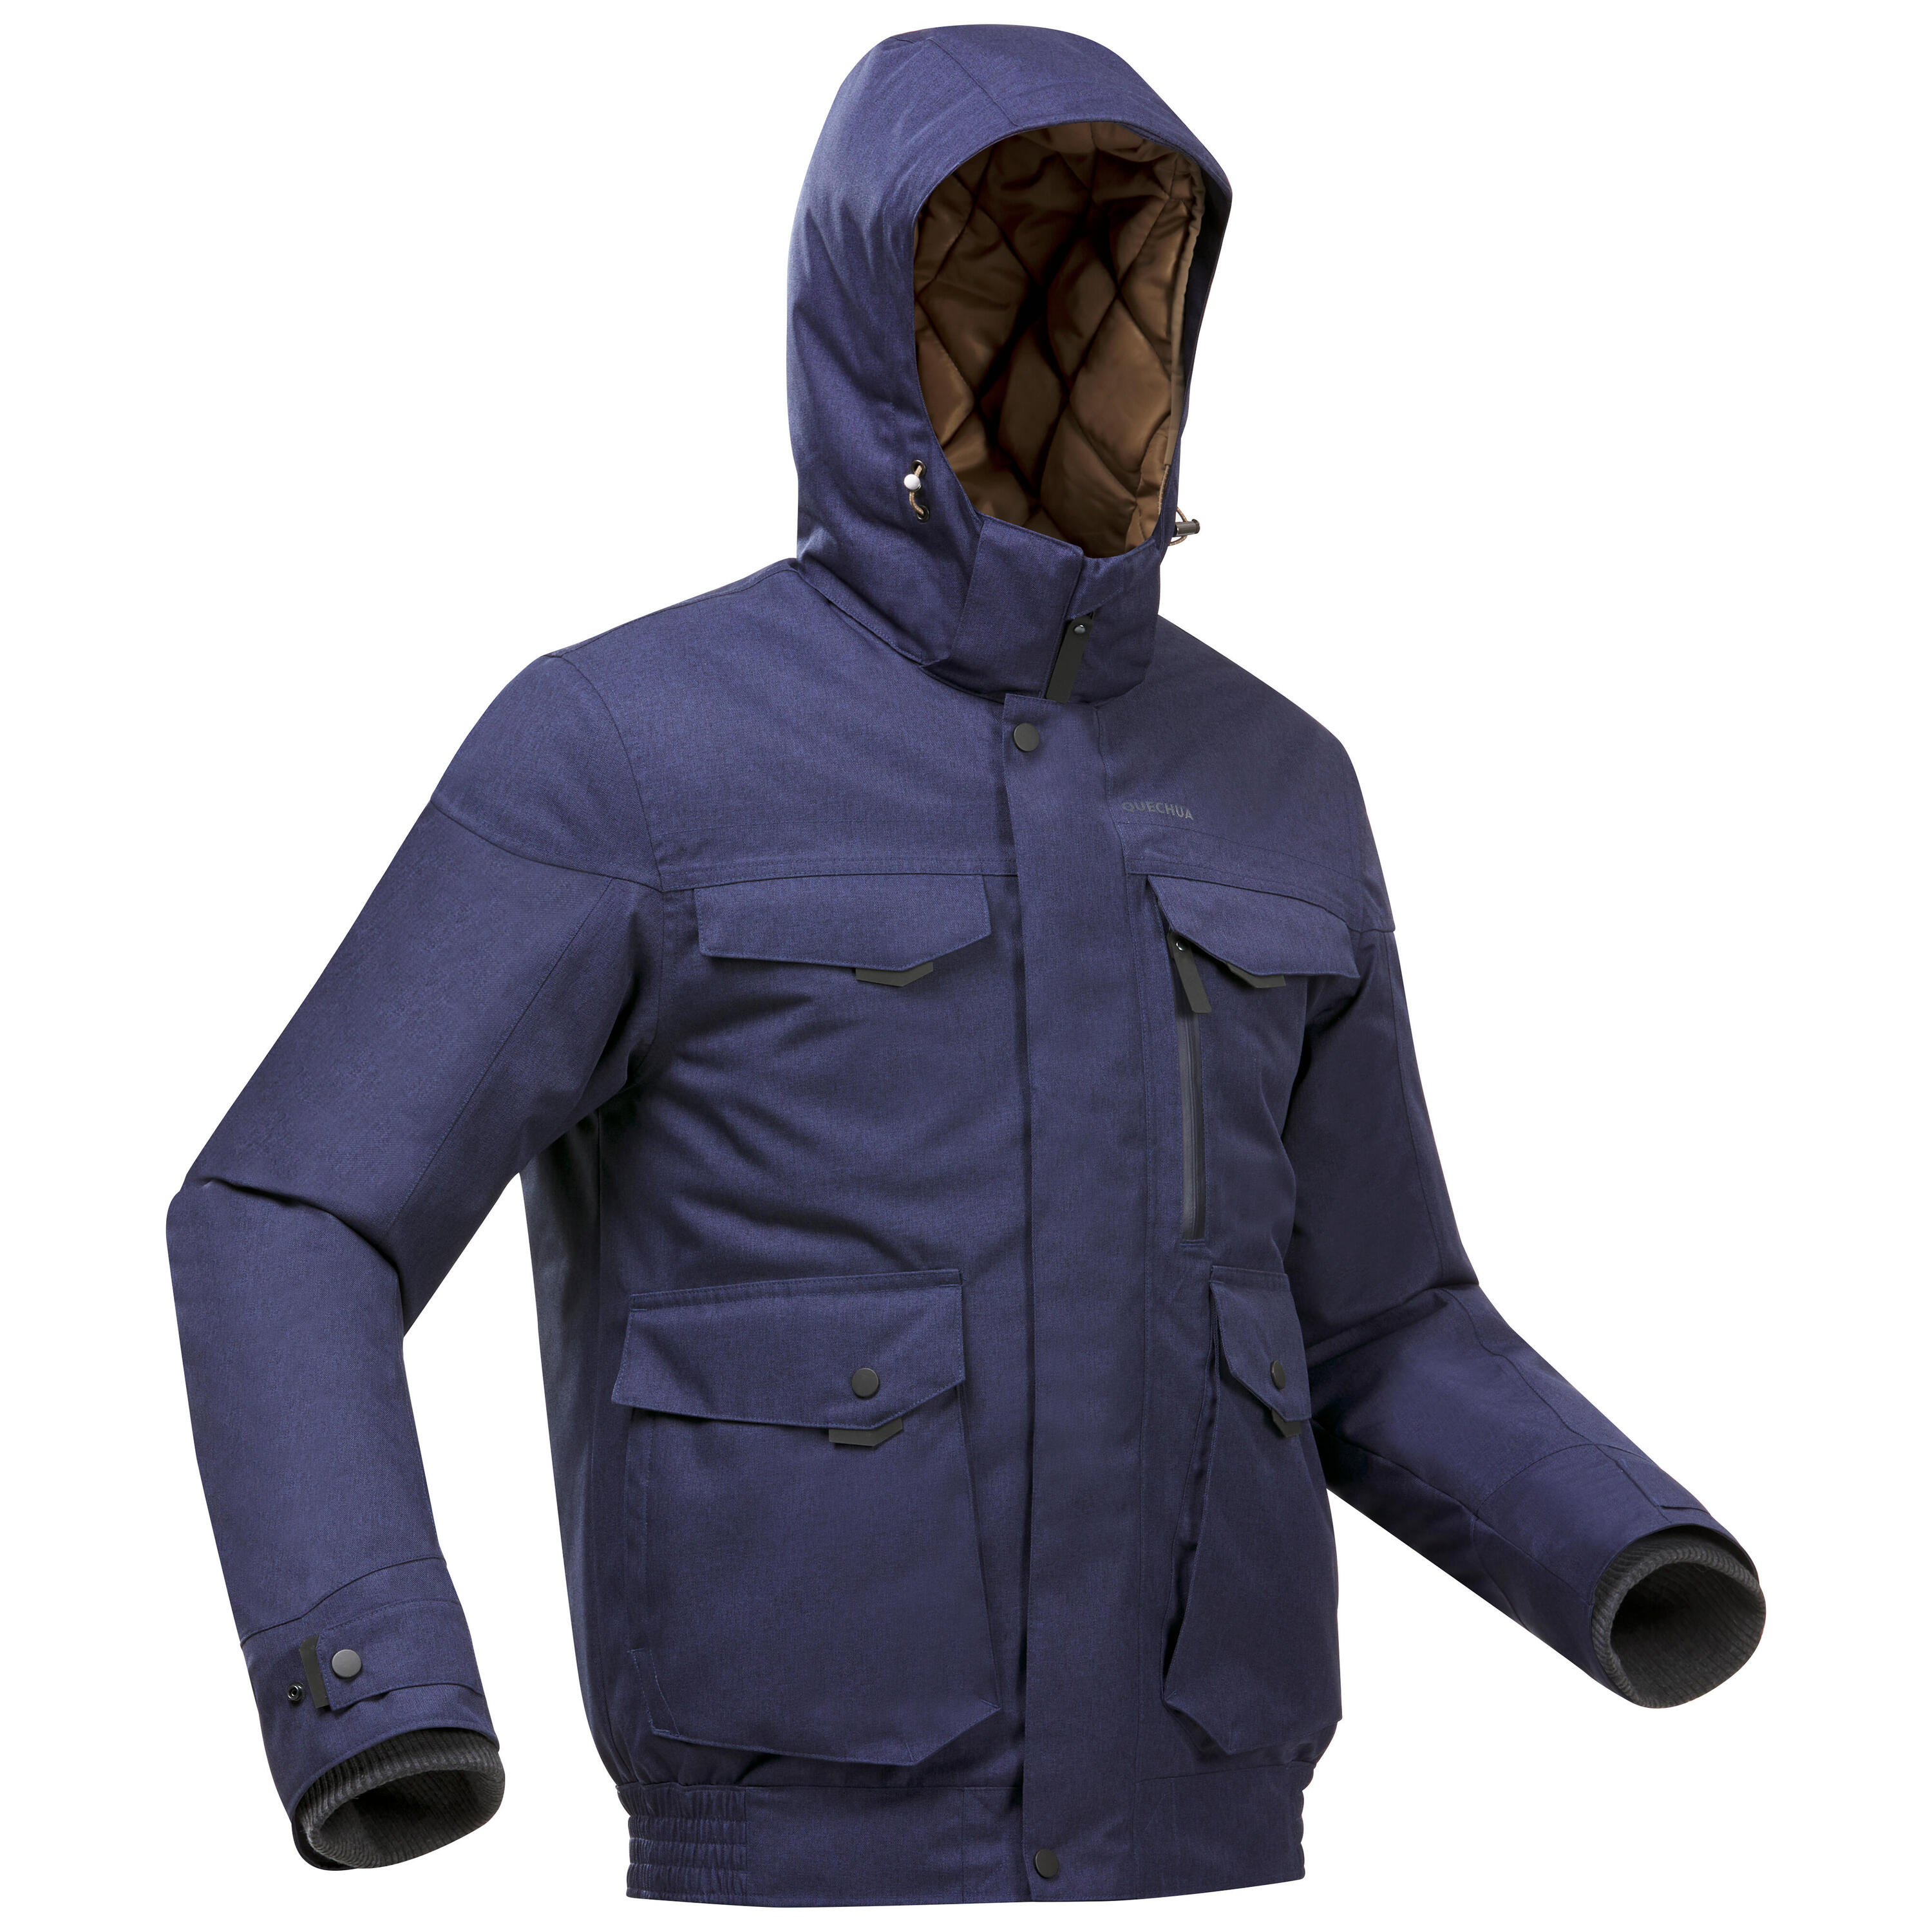 QUECHUA Men’s Waterproof Winter Hiking Jacket SH100 X-Warm -10°C